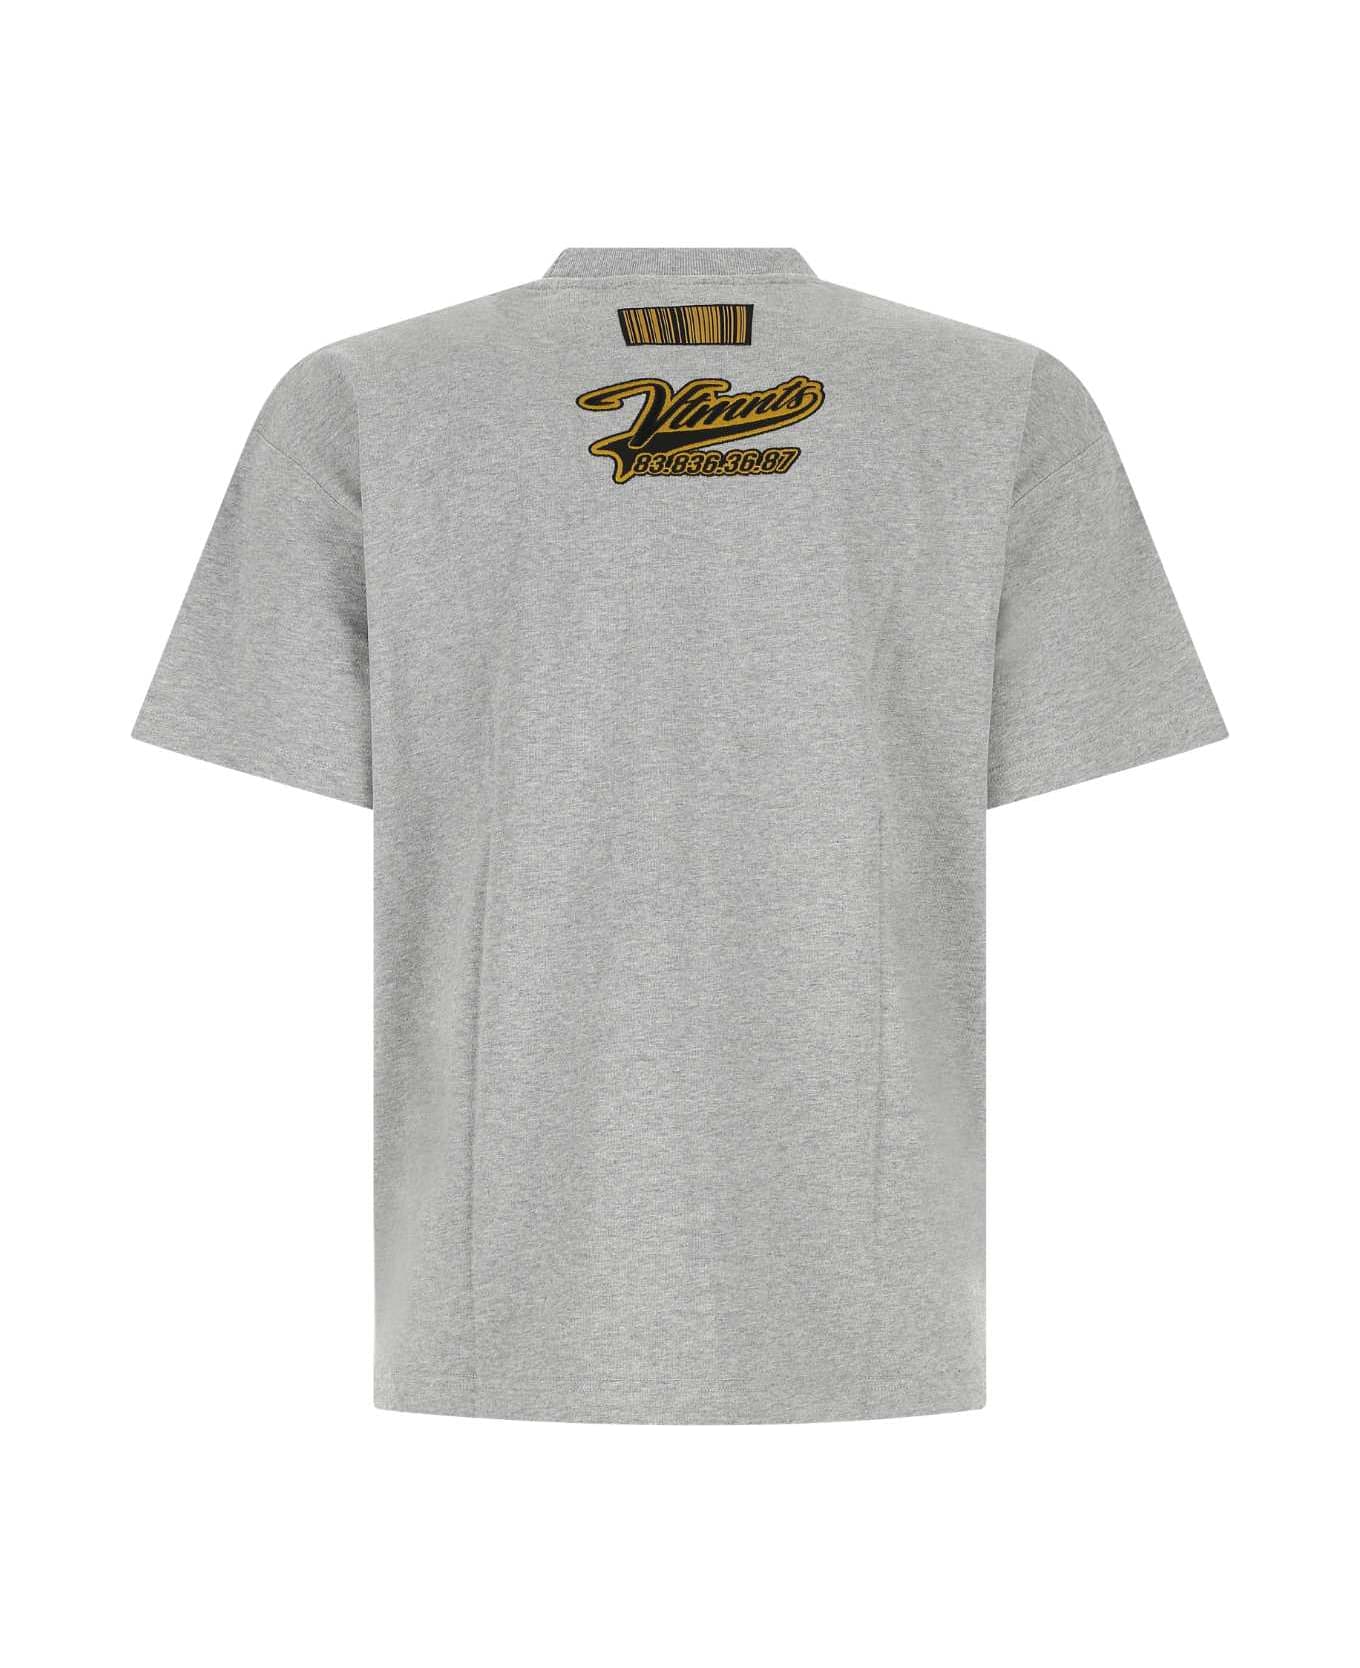 VTMNTS Melange Grey Cotton T-shirt - GREYMELANGE シャツ